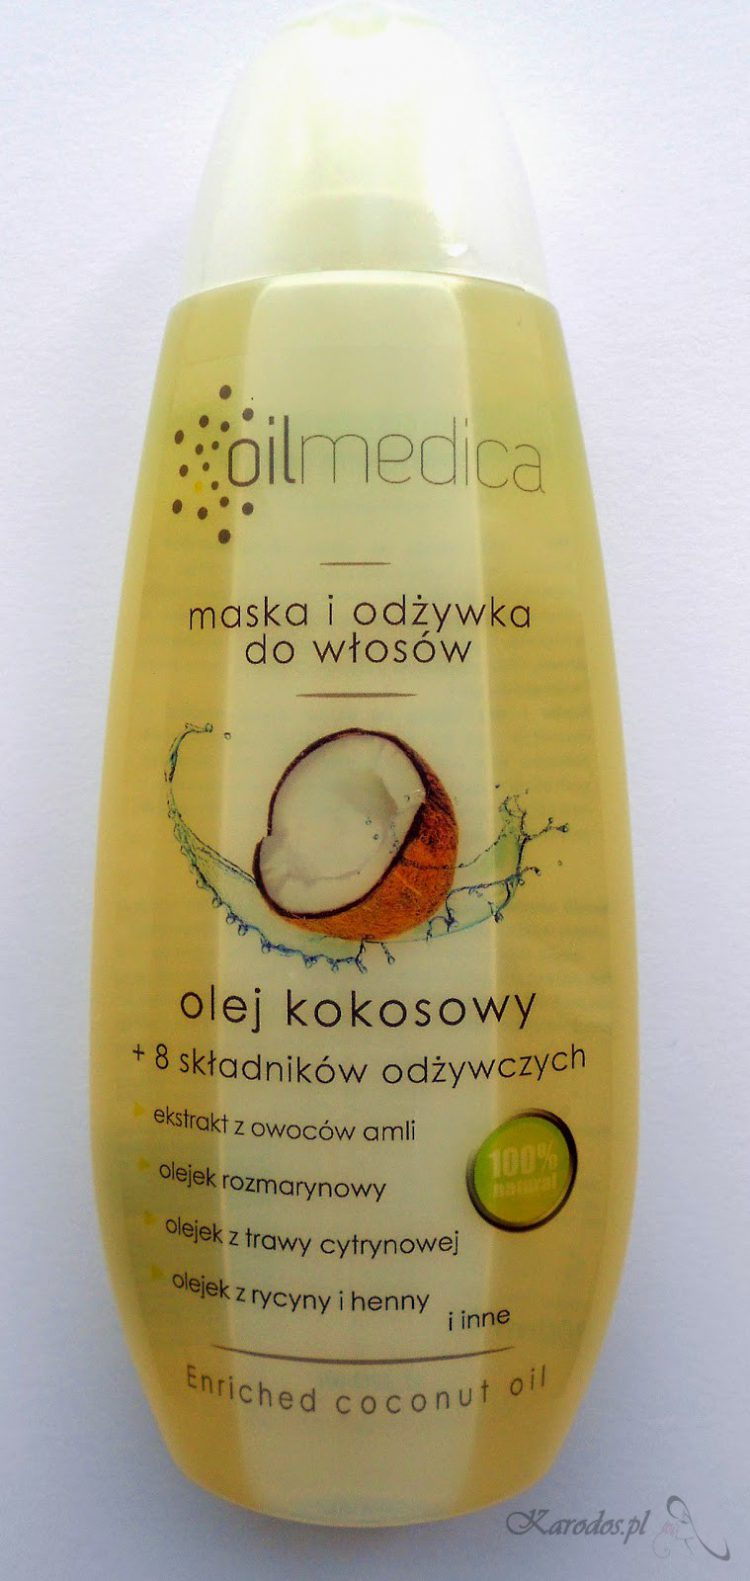 Oilmedica, Olej kokosowy+ 8 składników odżywczych - maska i odżywka do włosów